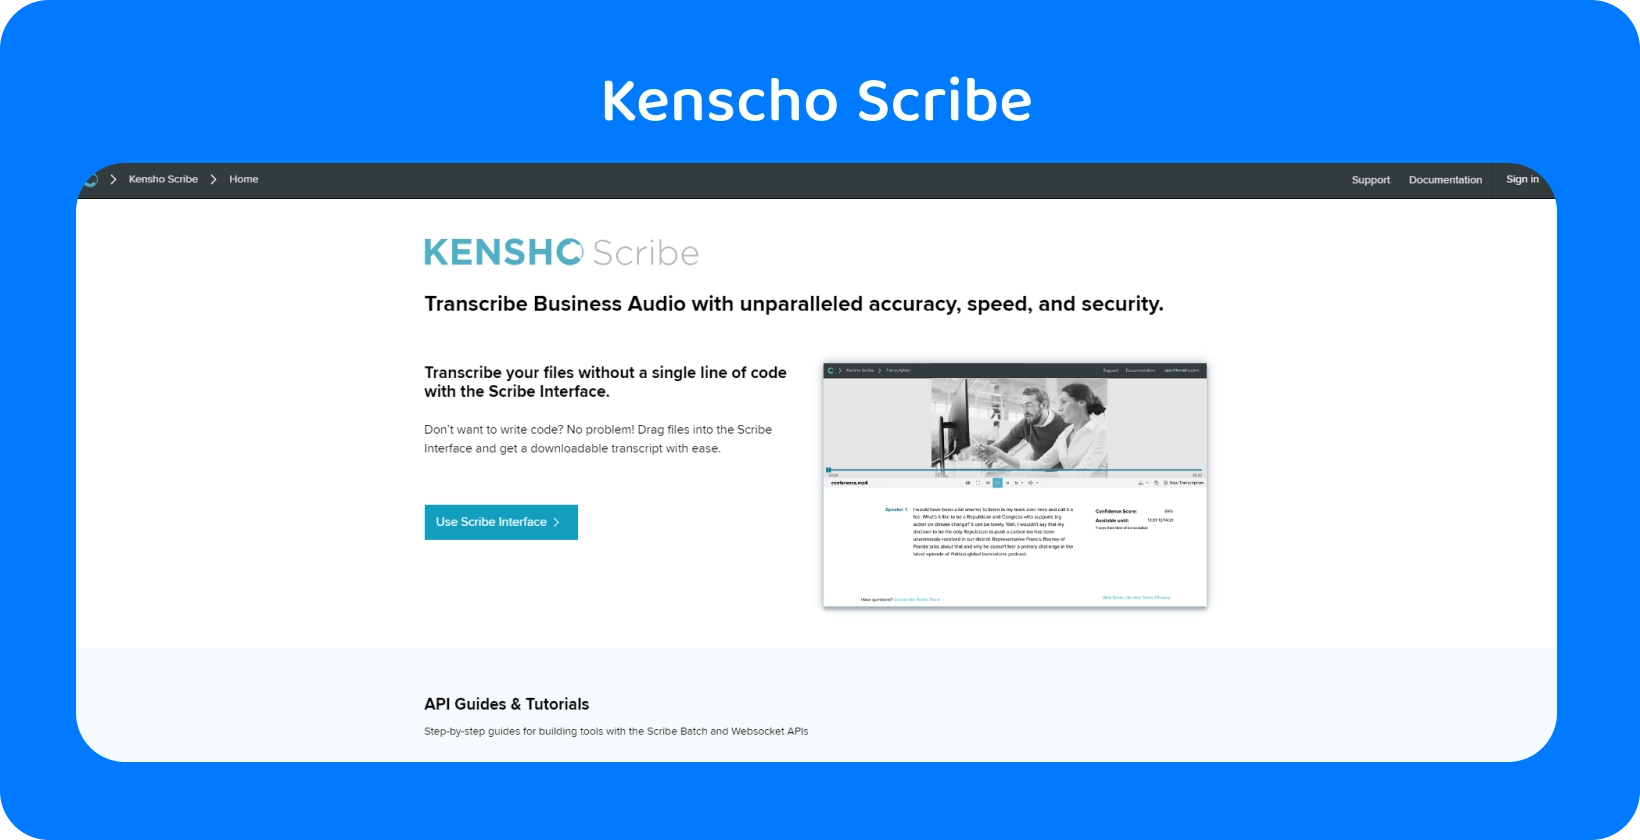 Spletna stran Kensho z besedilom "REŠITVE", ki ponuja napredna AI orodja, ki dopolnjujejo Word narekovanje.